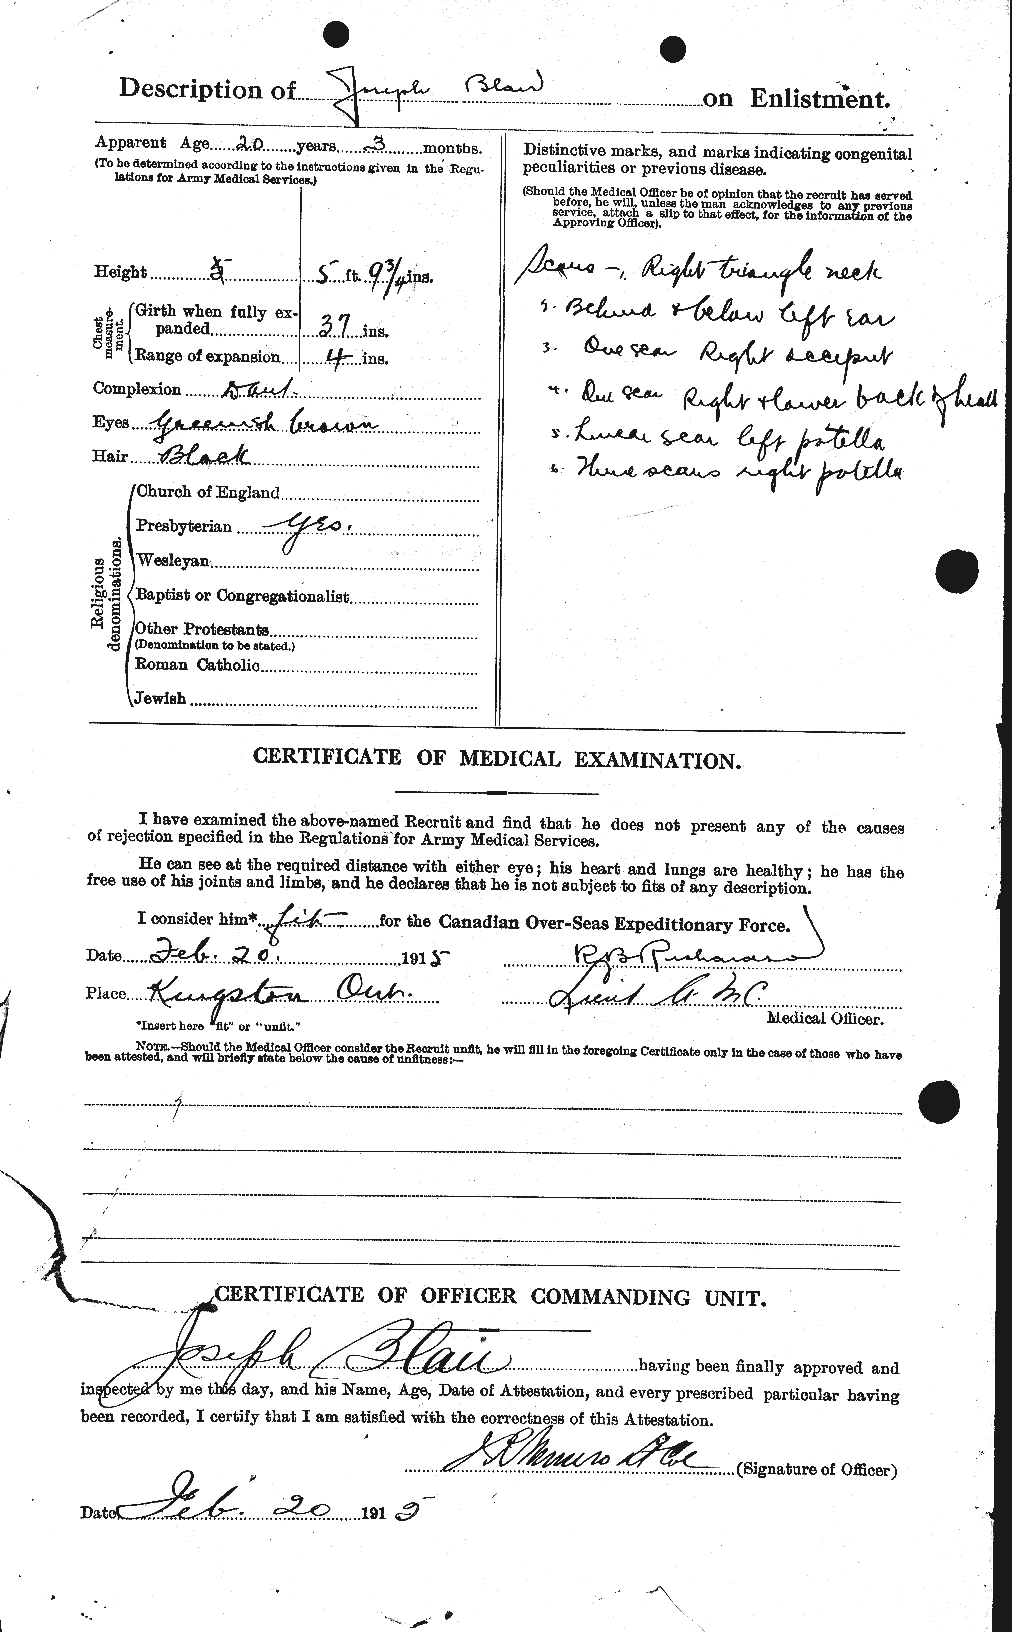 Dossiers du Personnel de la Première Guerre mondiale - CEC 243104b